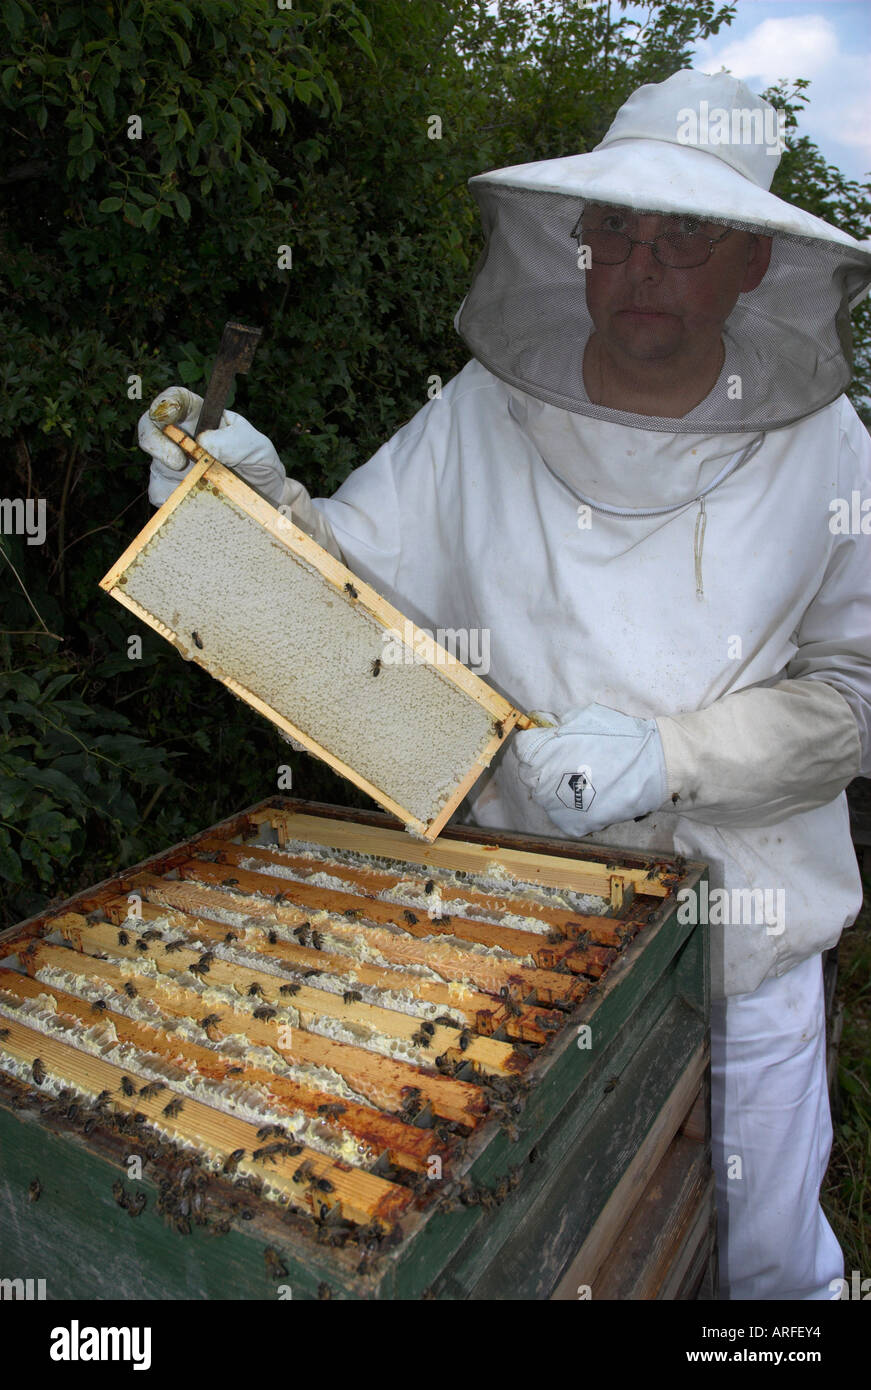 Bienenzucht. Wabe Bikage. Bienenwabe. Biene-Zweisimmen. Honig.  Panal.  Rayon de Miel. Stockfoto